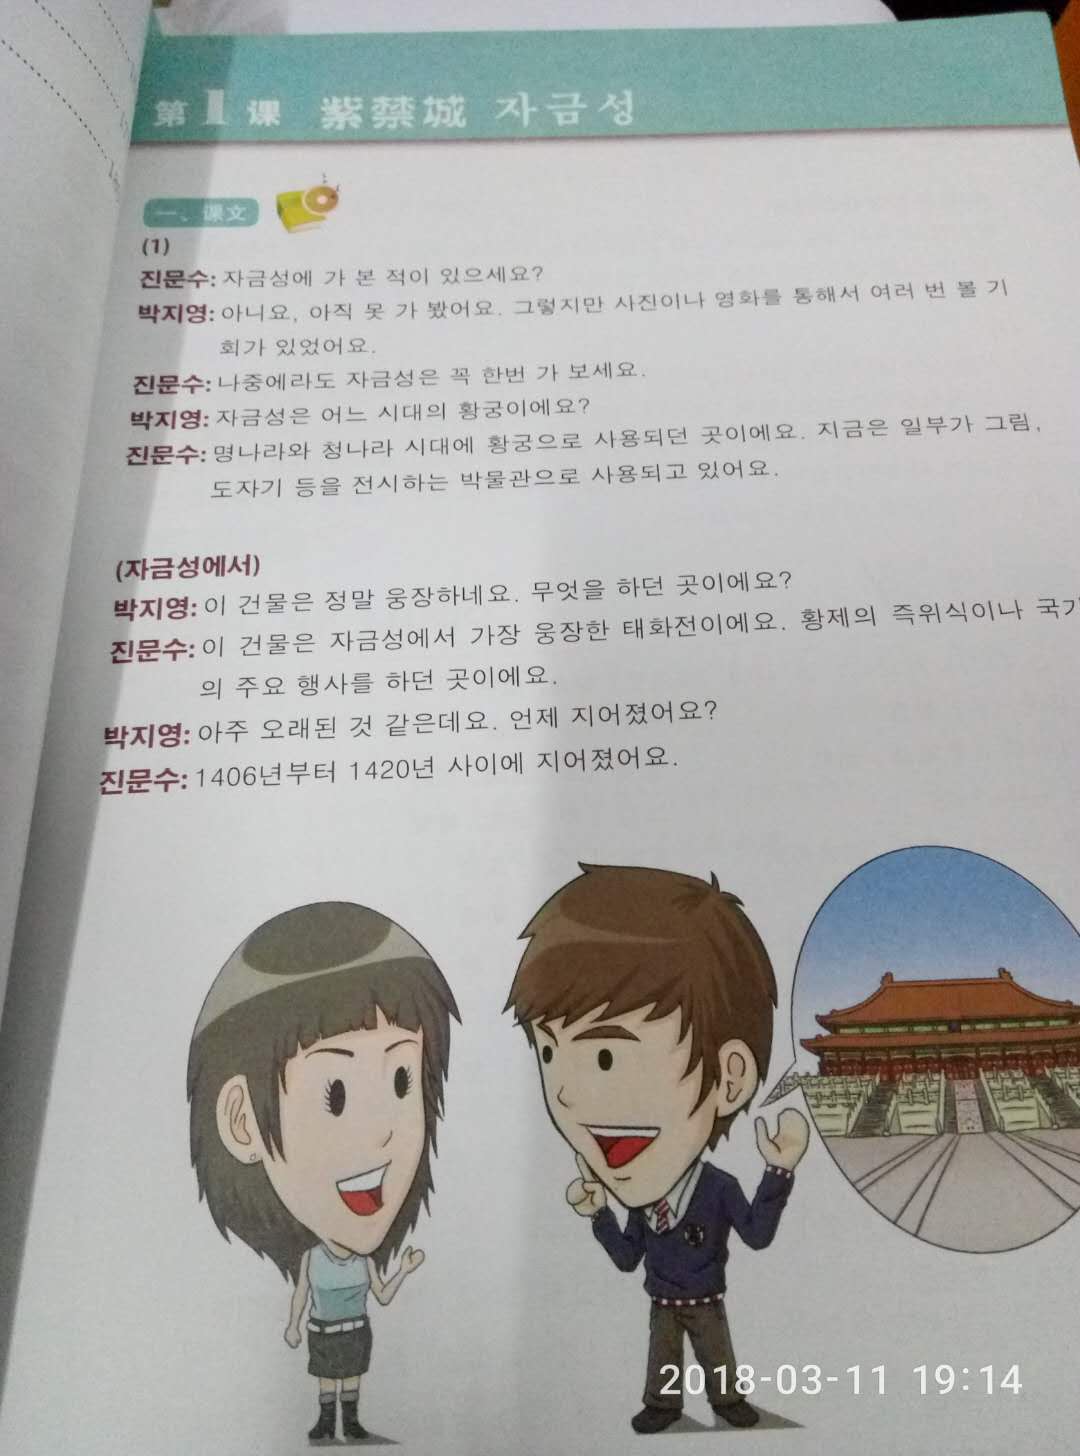 印刷很清楚，是正版的，好好学韩语吧，很满意